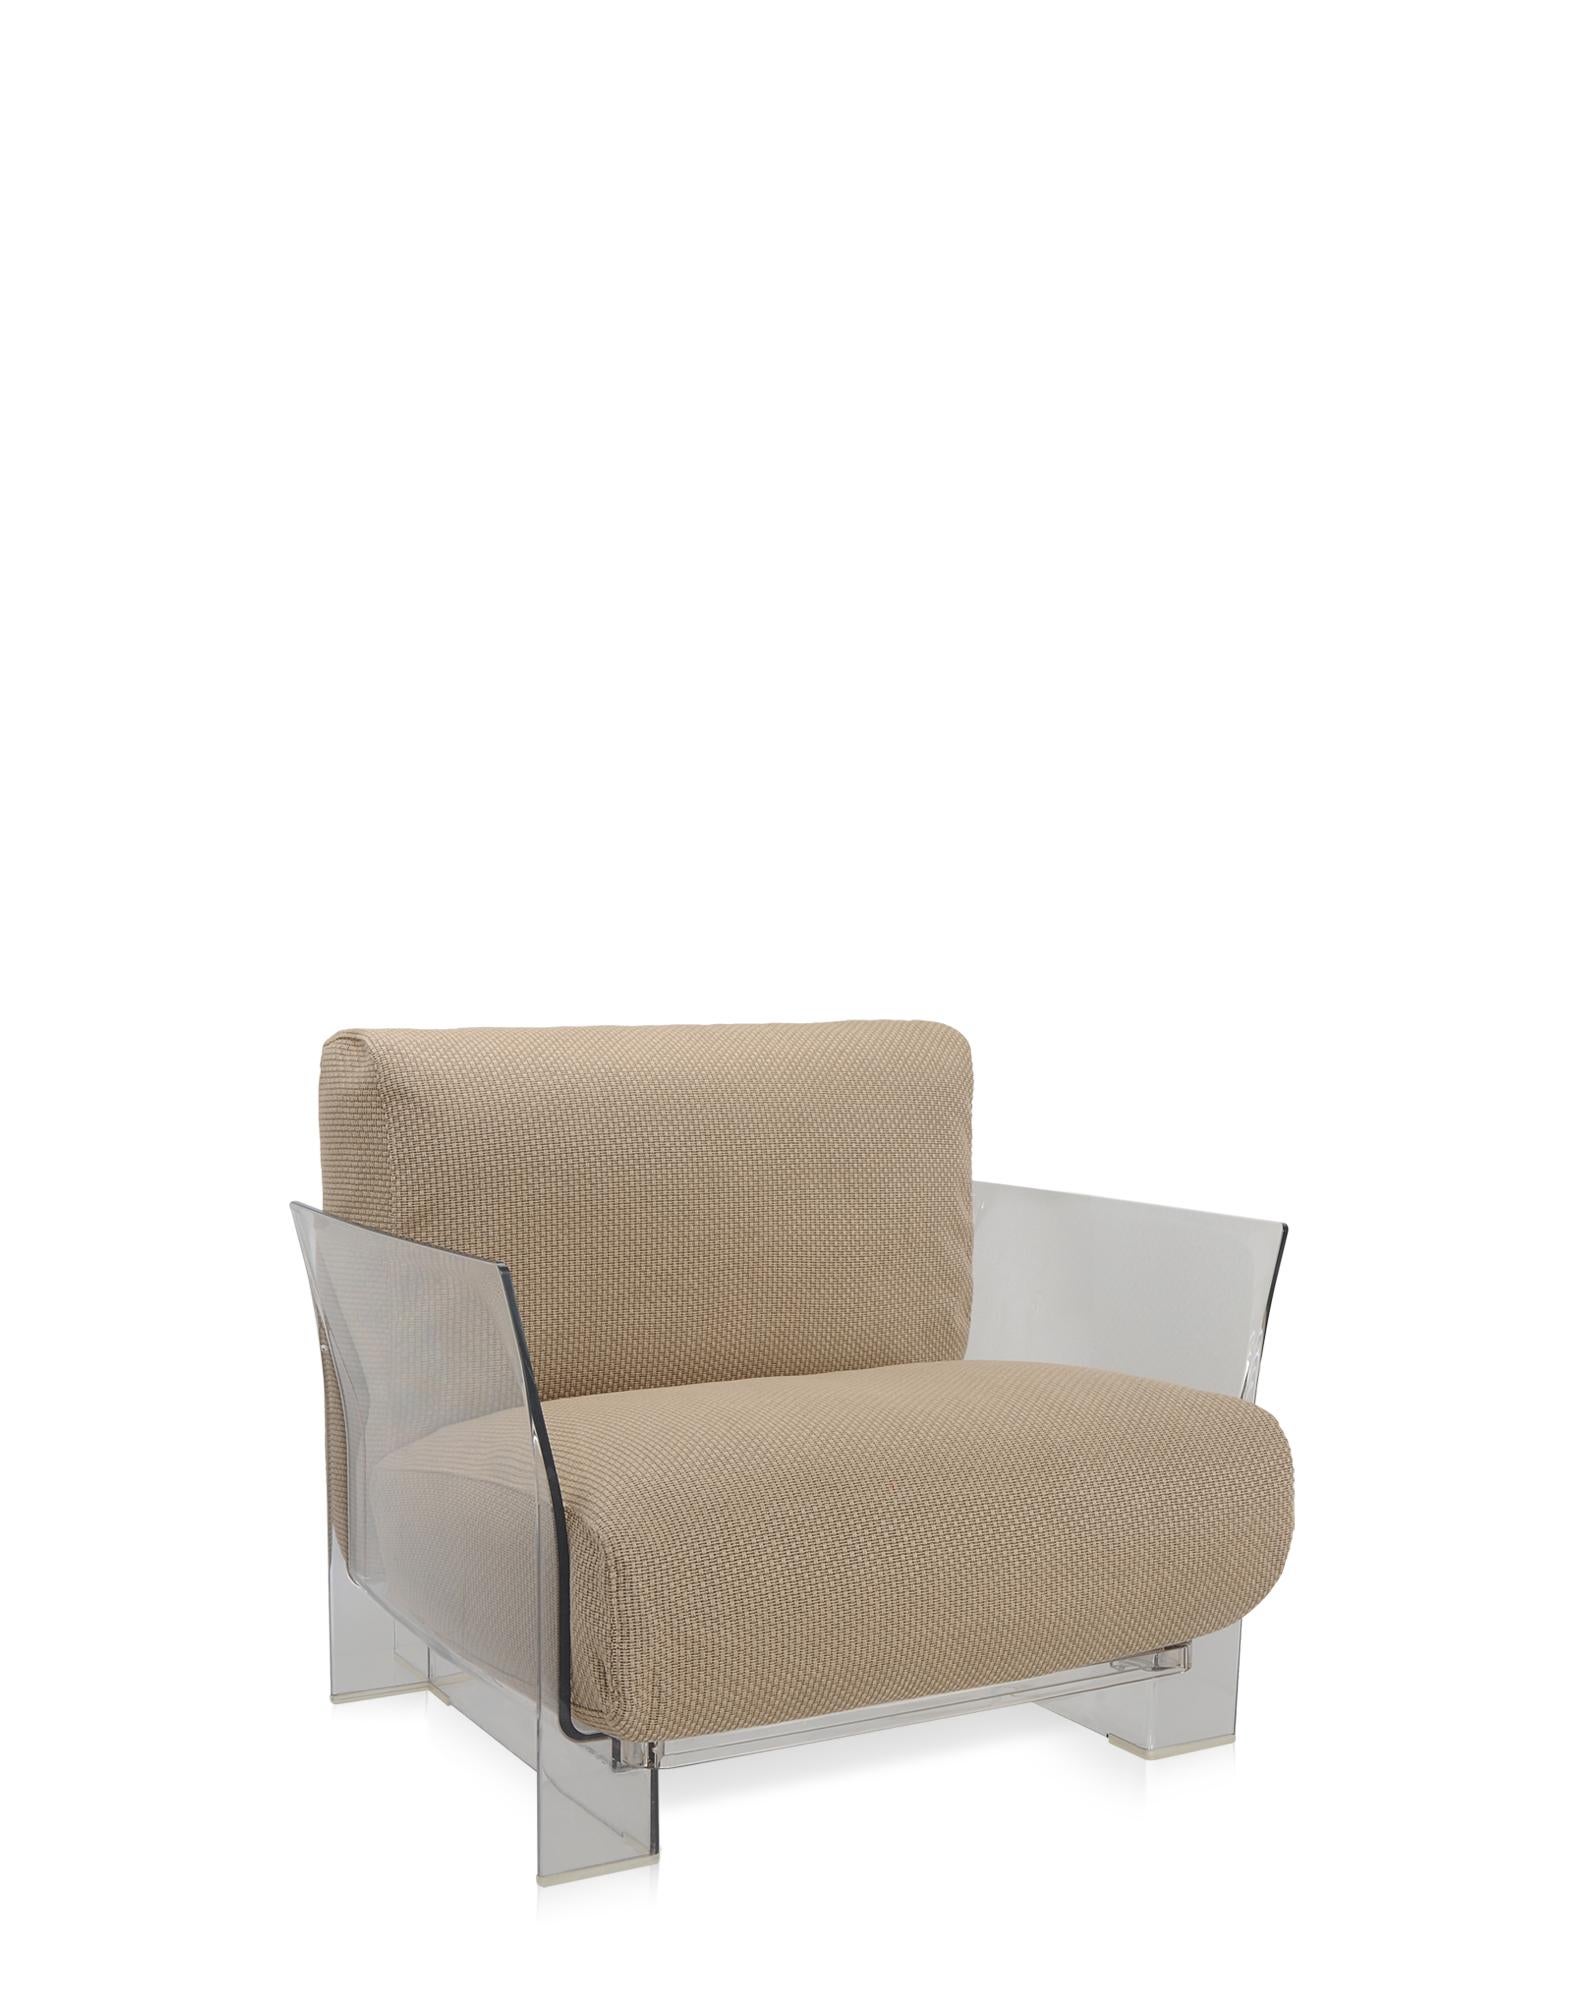 Pop outdoor ist das modulare Sofa mit flüchtigen Profilen, das sich durch große Sitz- und Rückenkissen auszeichnet, die es weich und bequem machen und aus Stoffen bestehen, die speziell für den Außenbereich konzipiert wurden. 
Die Pop-Kollektion